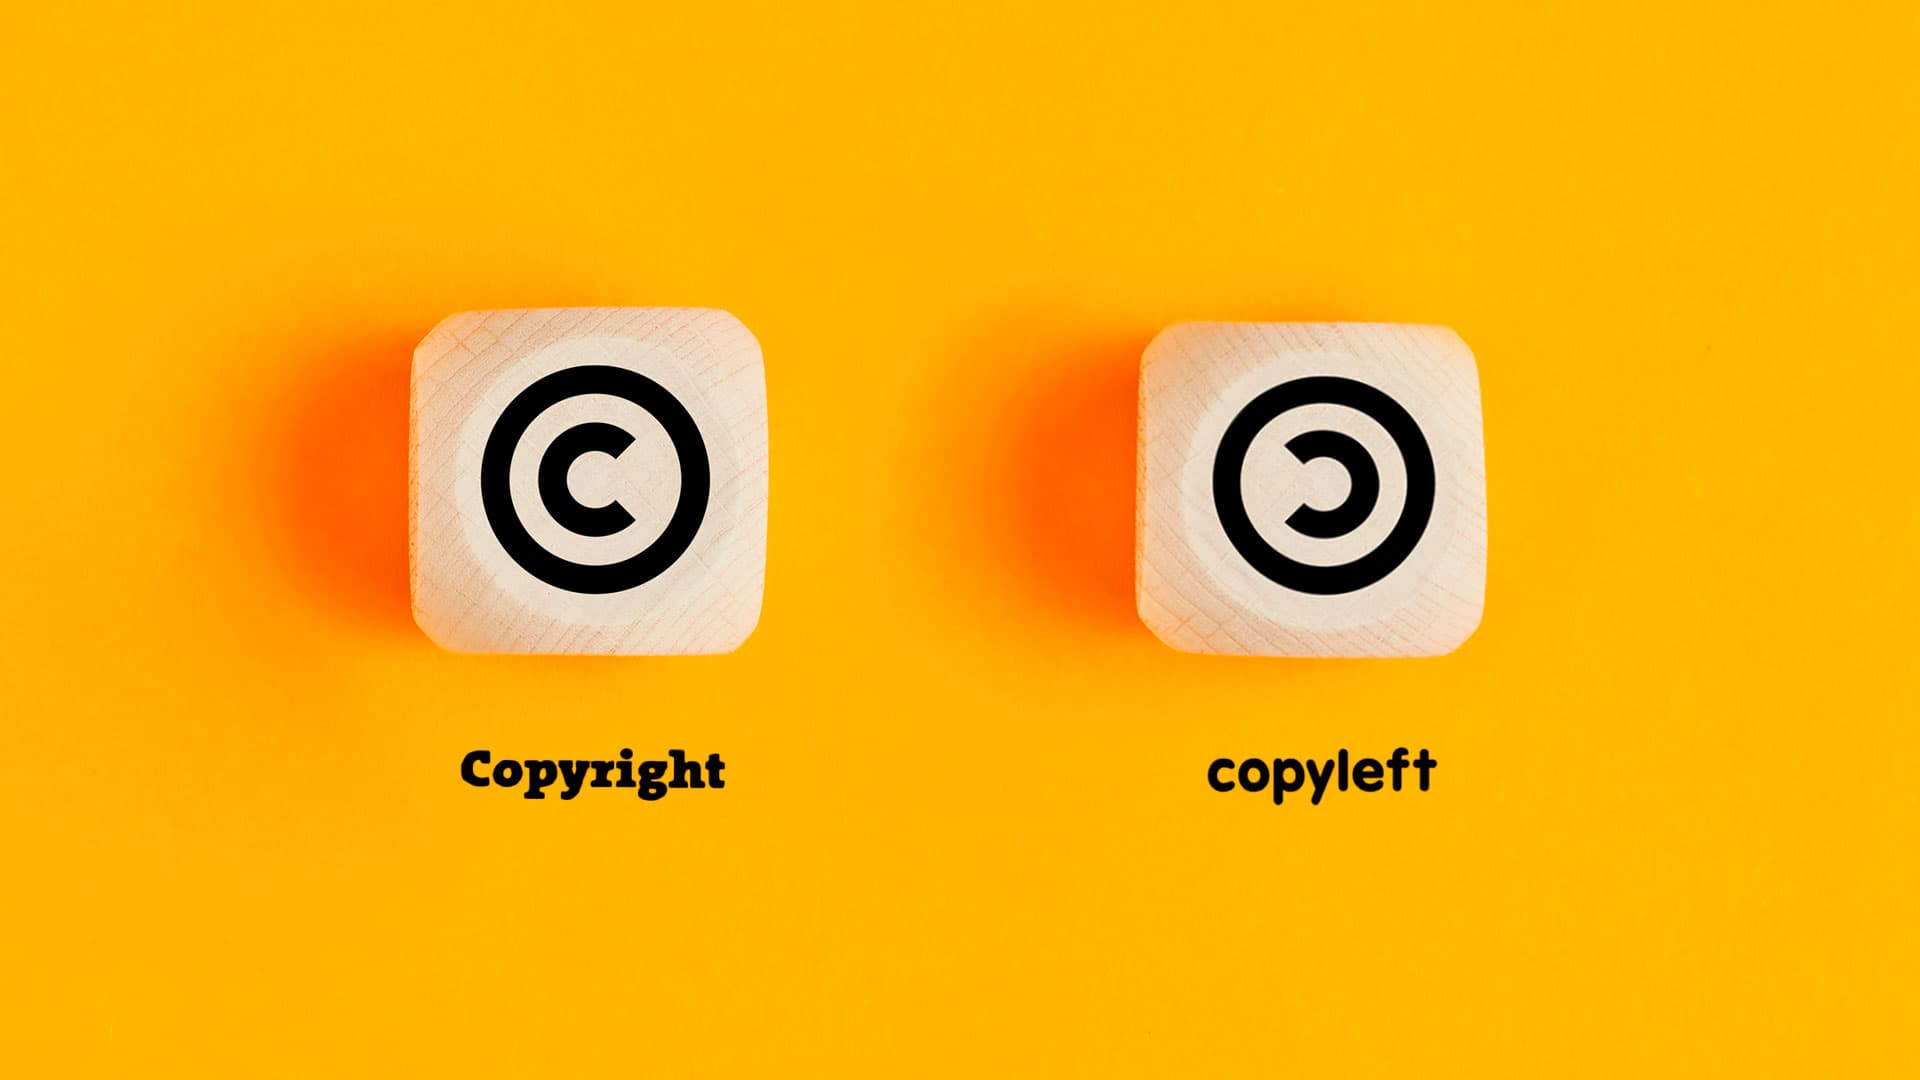 diferencia entre copyright y copyleft